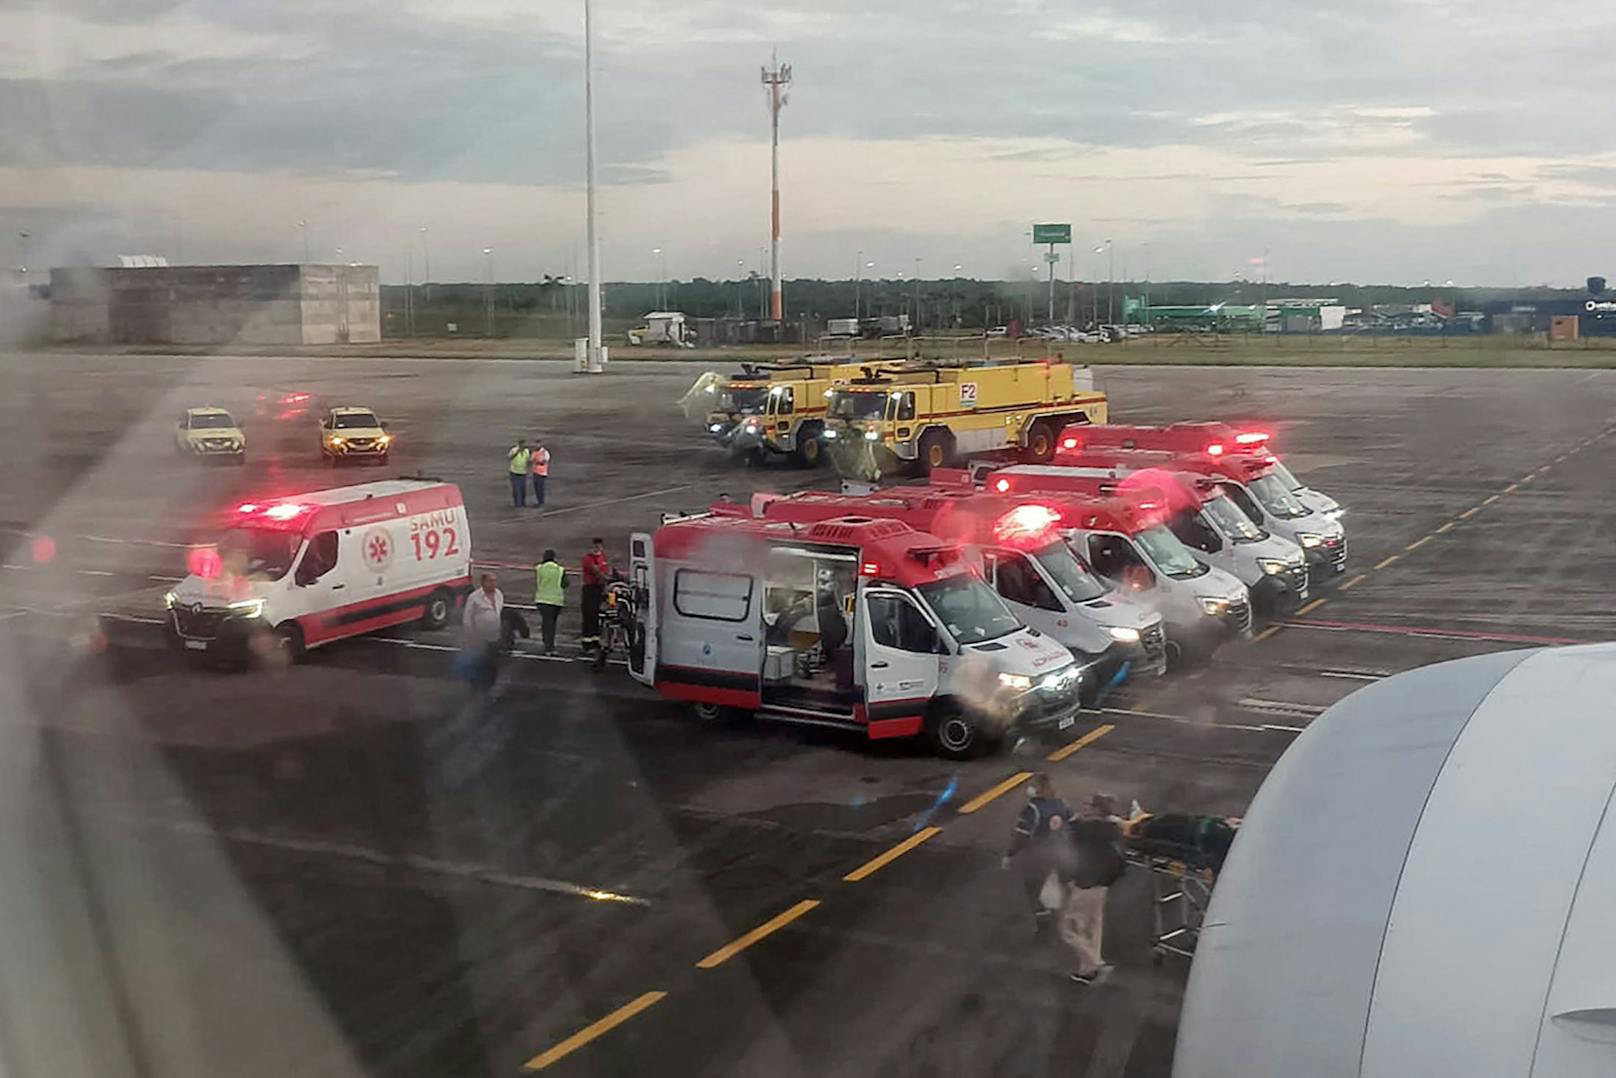 Flug UX045 geriet am 1. Juli 2024 auf dem Weg von Spanien nach Montevideo, Uruguay, in heftige Turbulenzen, musste wegen zahlreicher Verletzter notlanden.